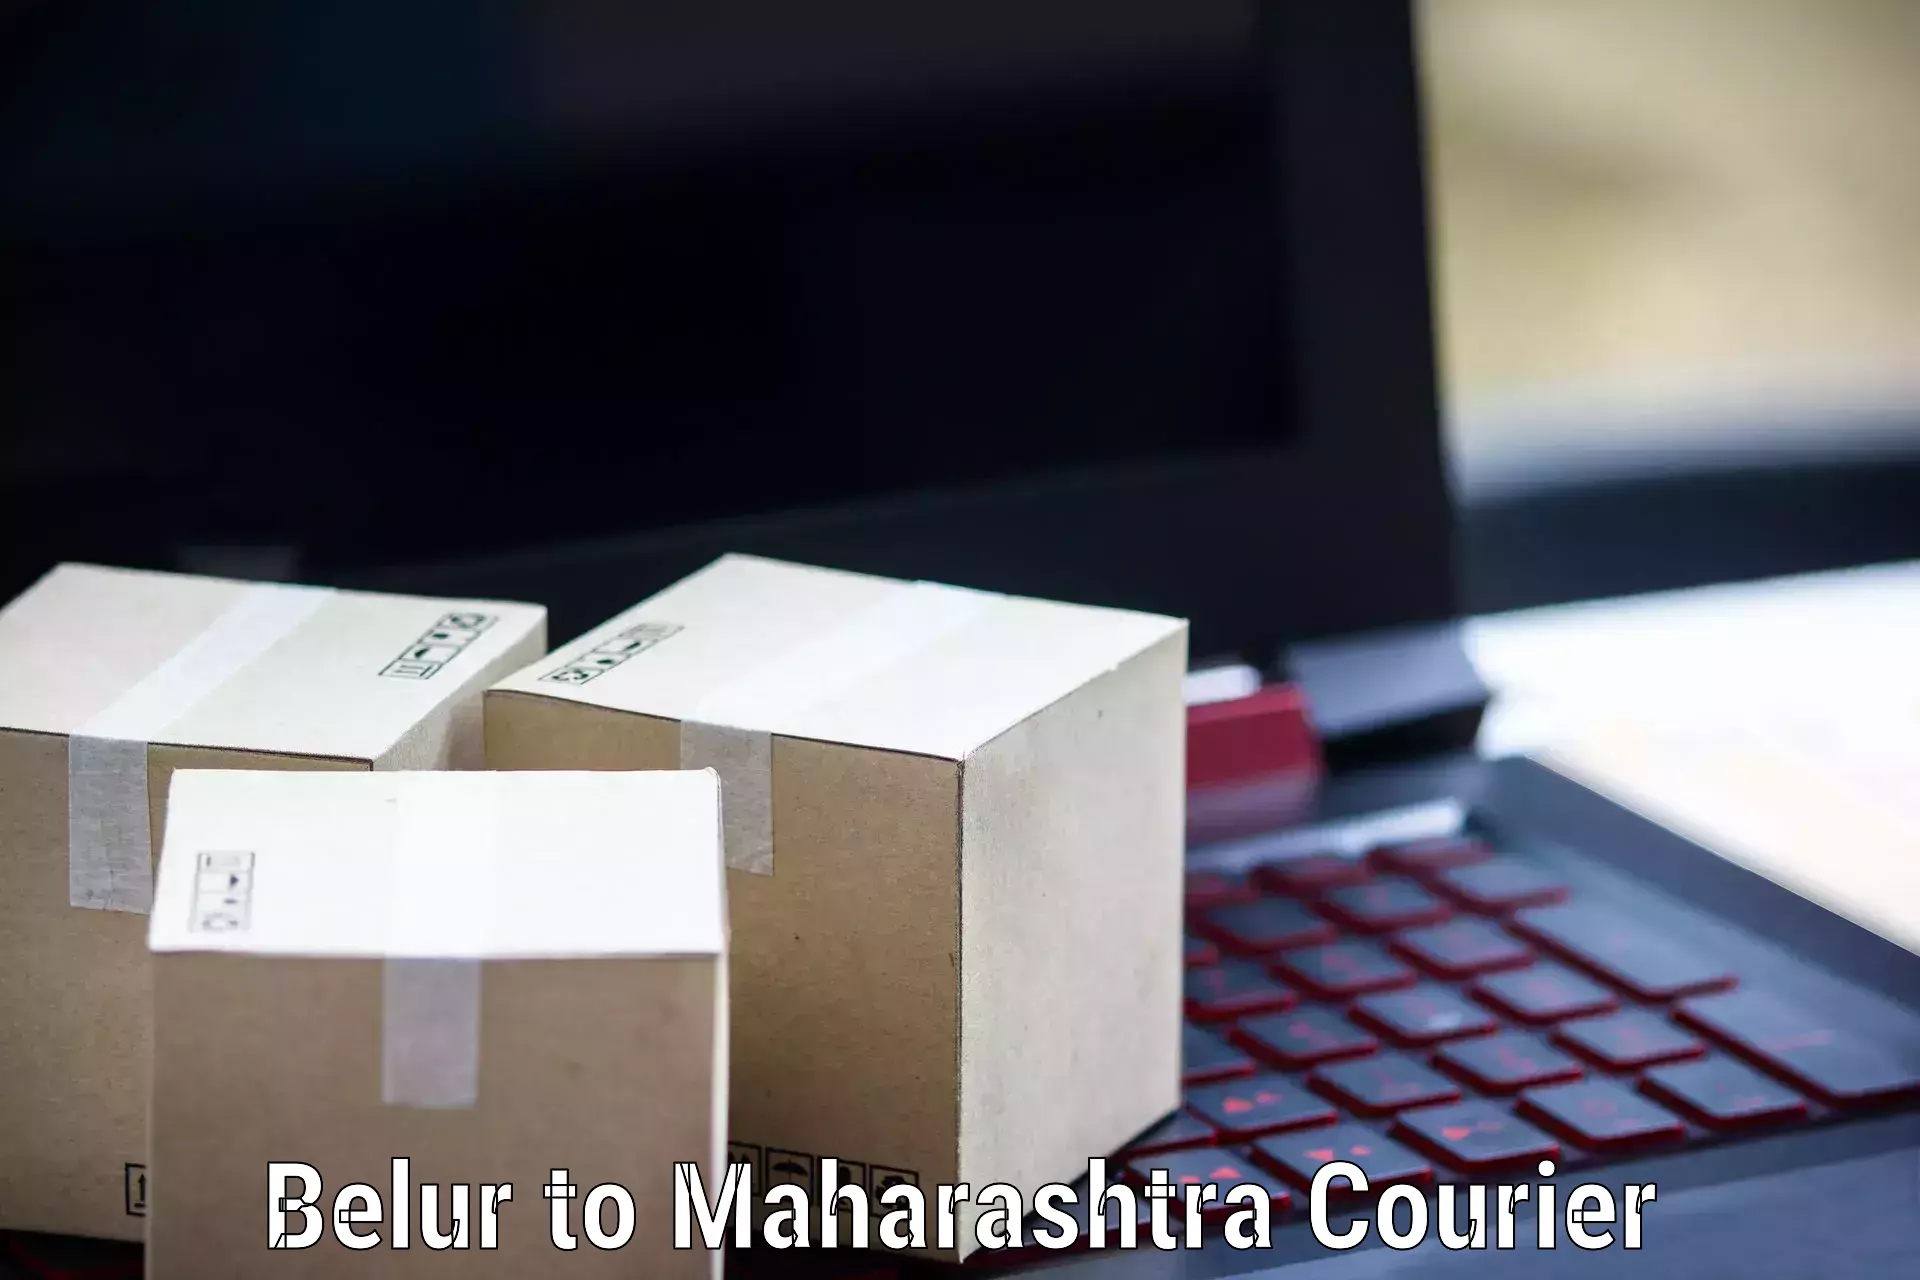 Courier service comparison Belur to Maharashtra